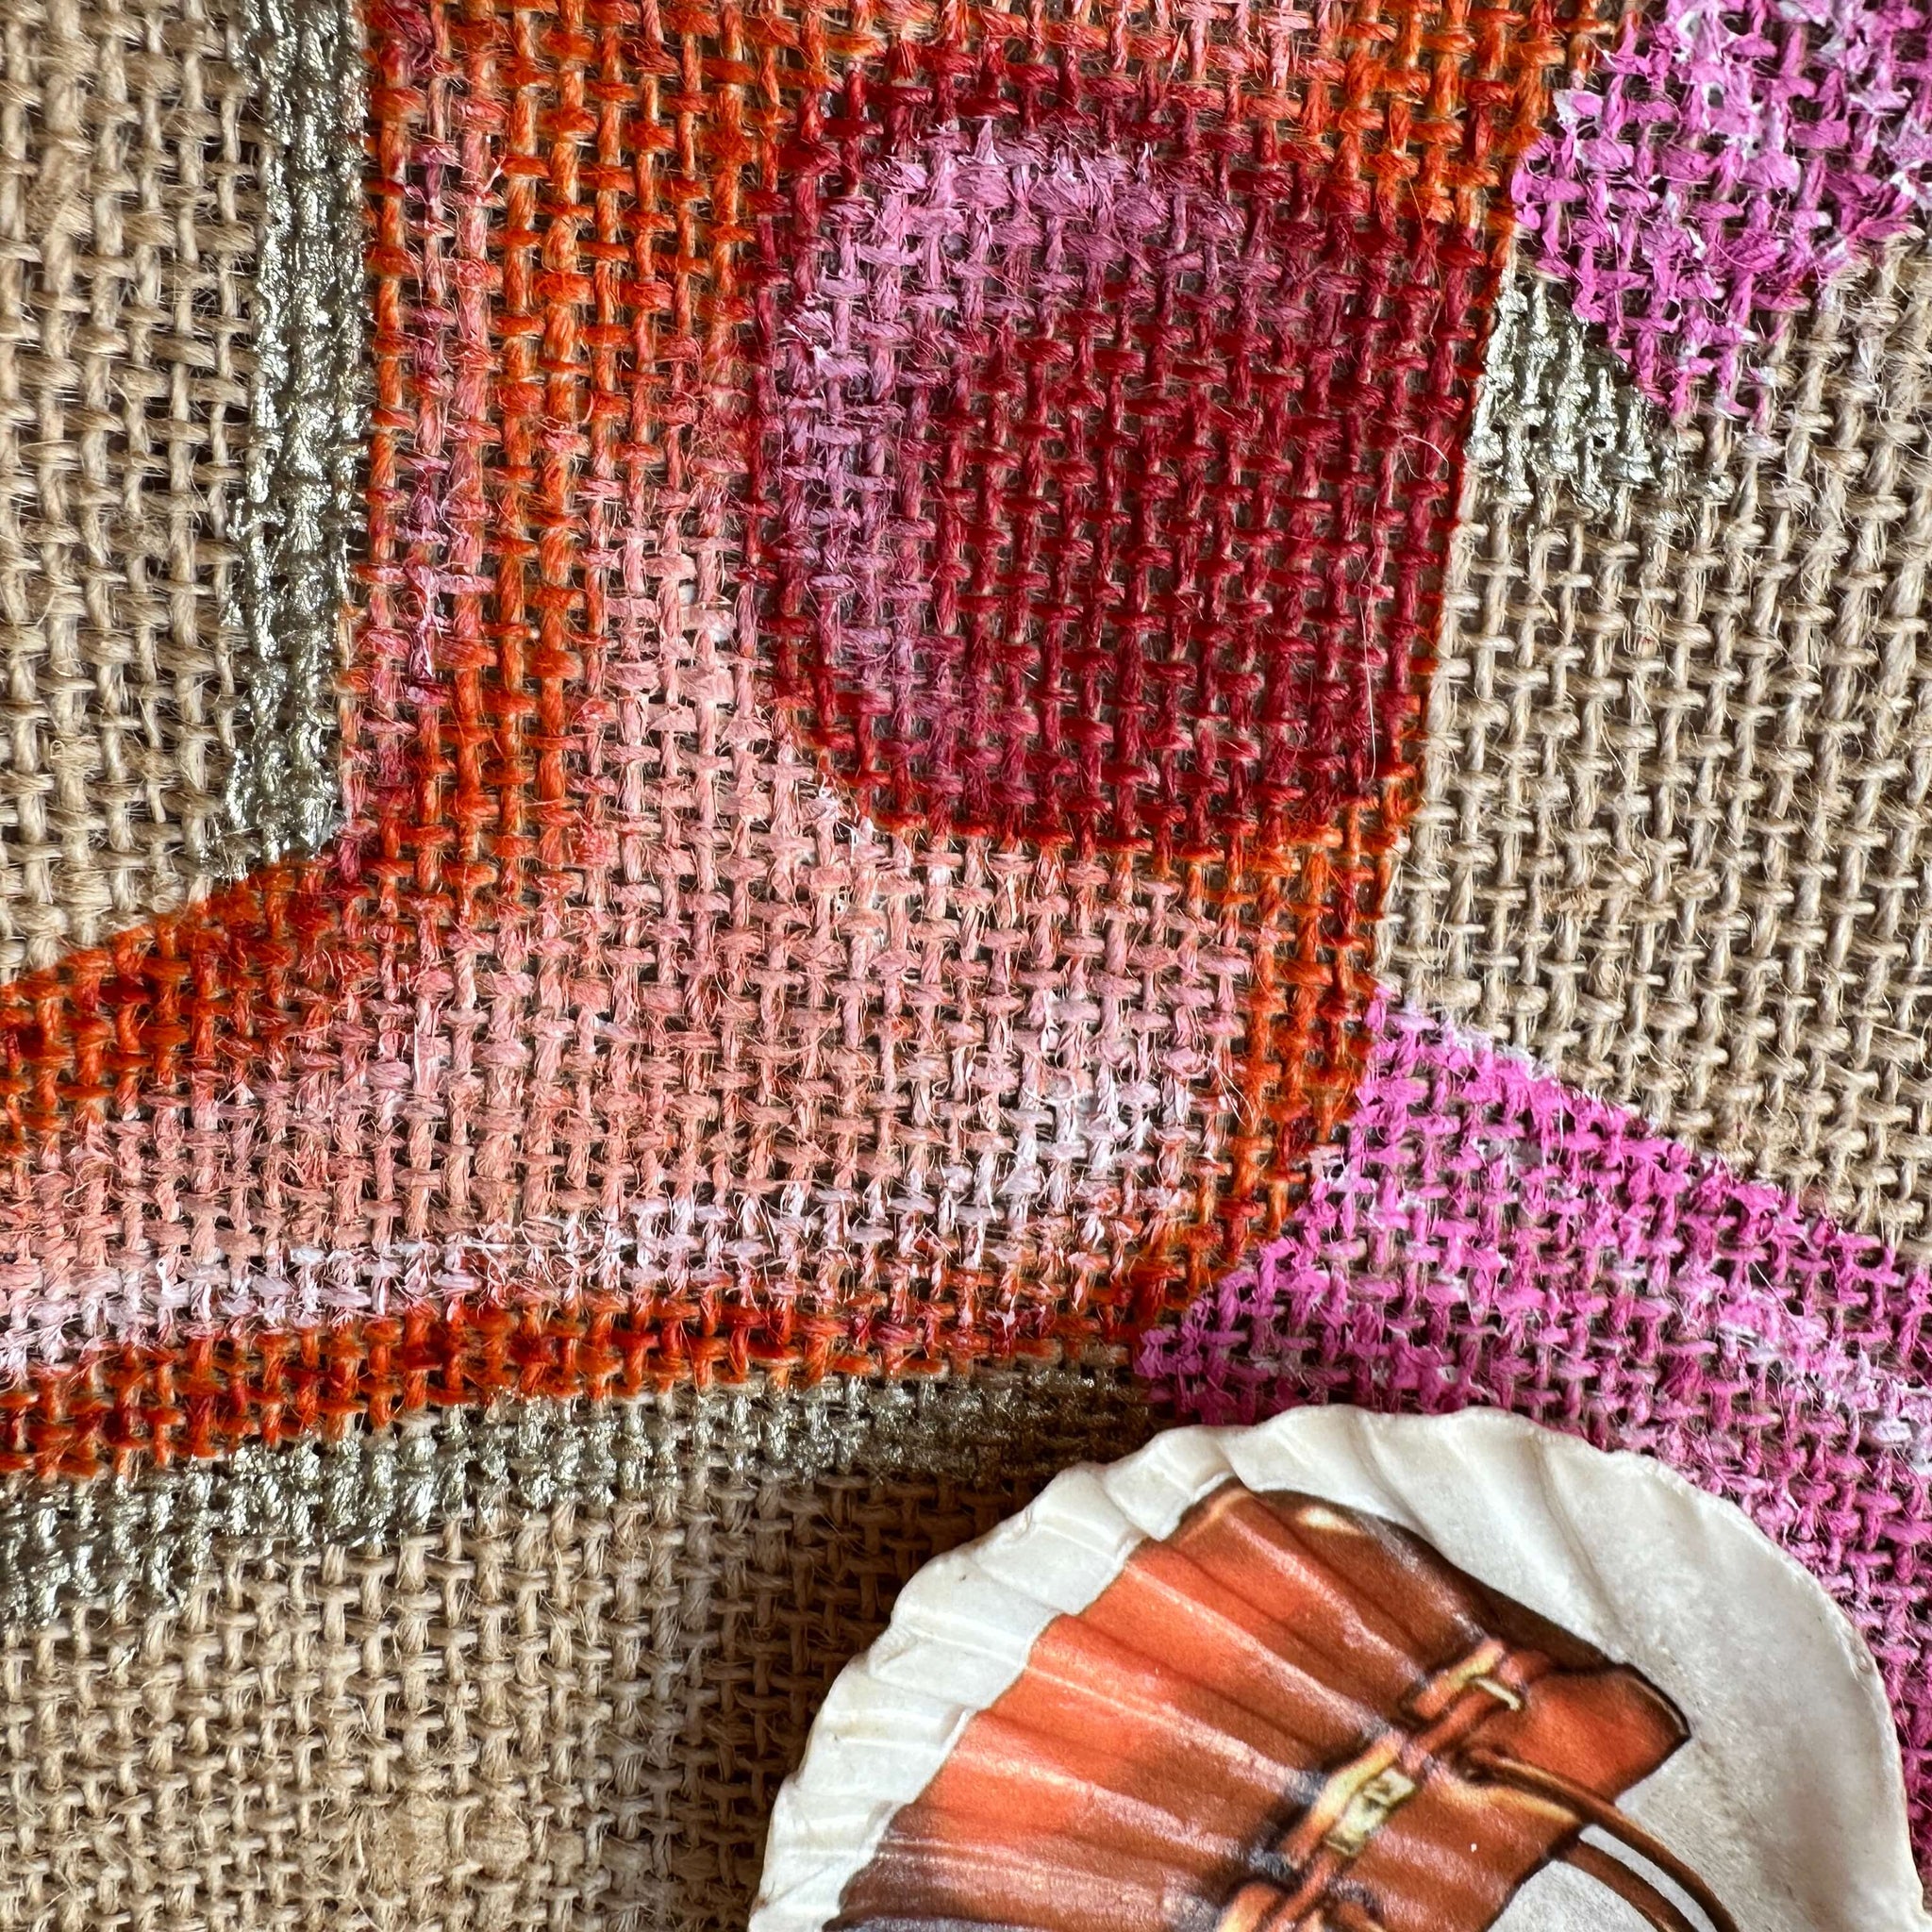 Art Bag "Horse Orange", 26x22cm